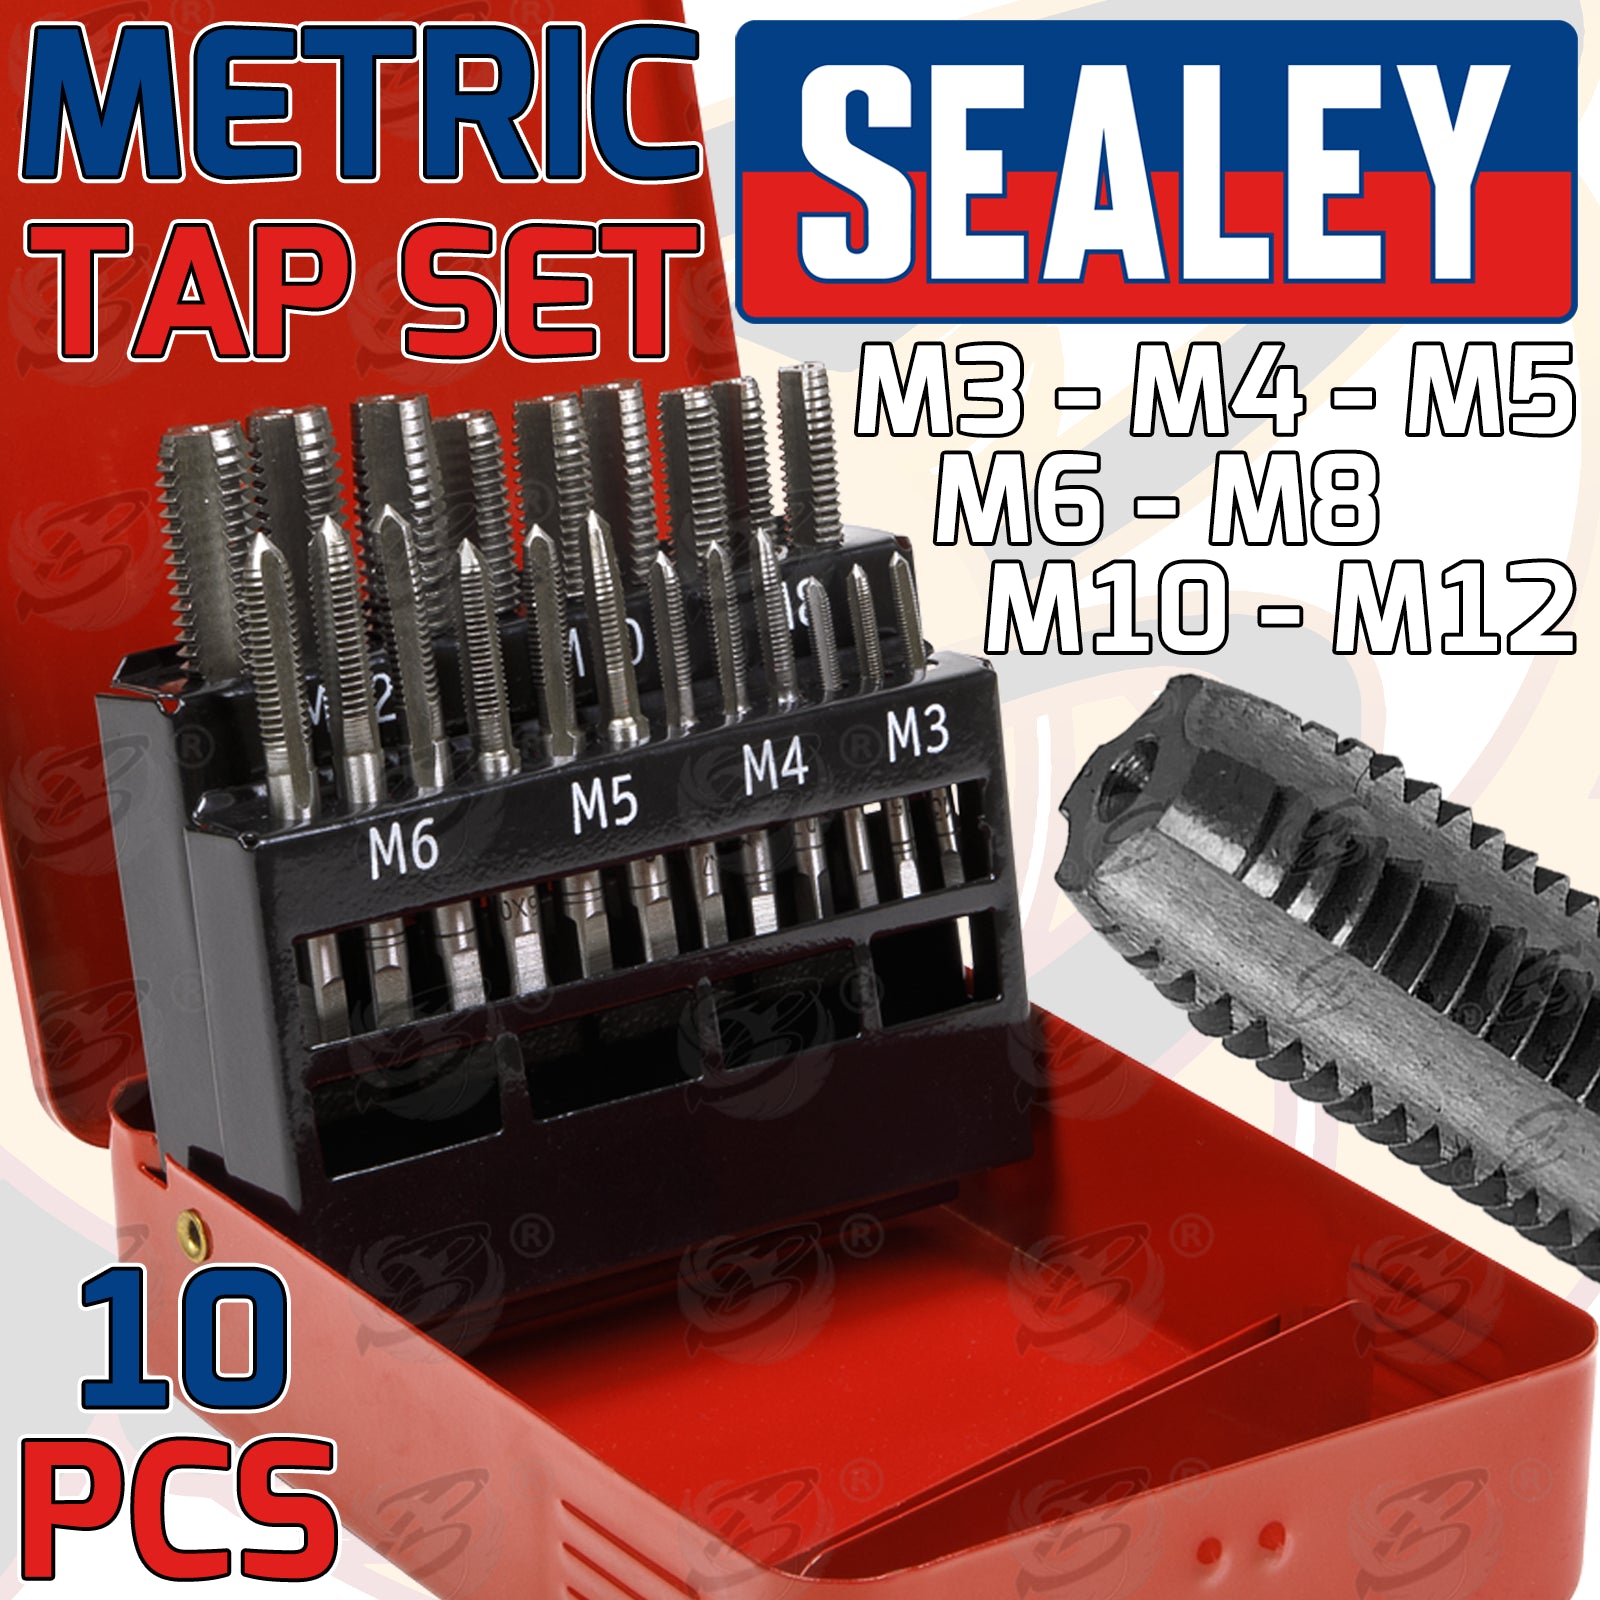 SEALEY 10PCS METRIC TAP SET M3 - M12